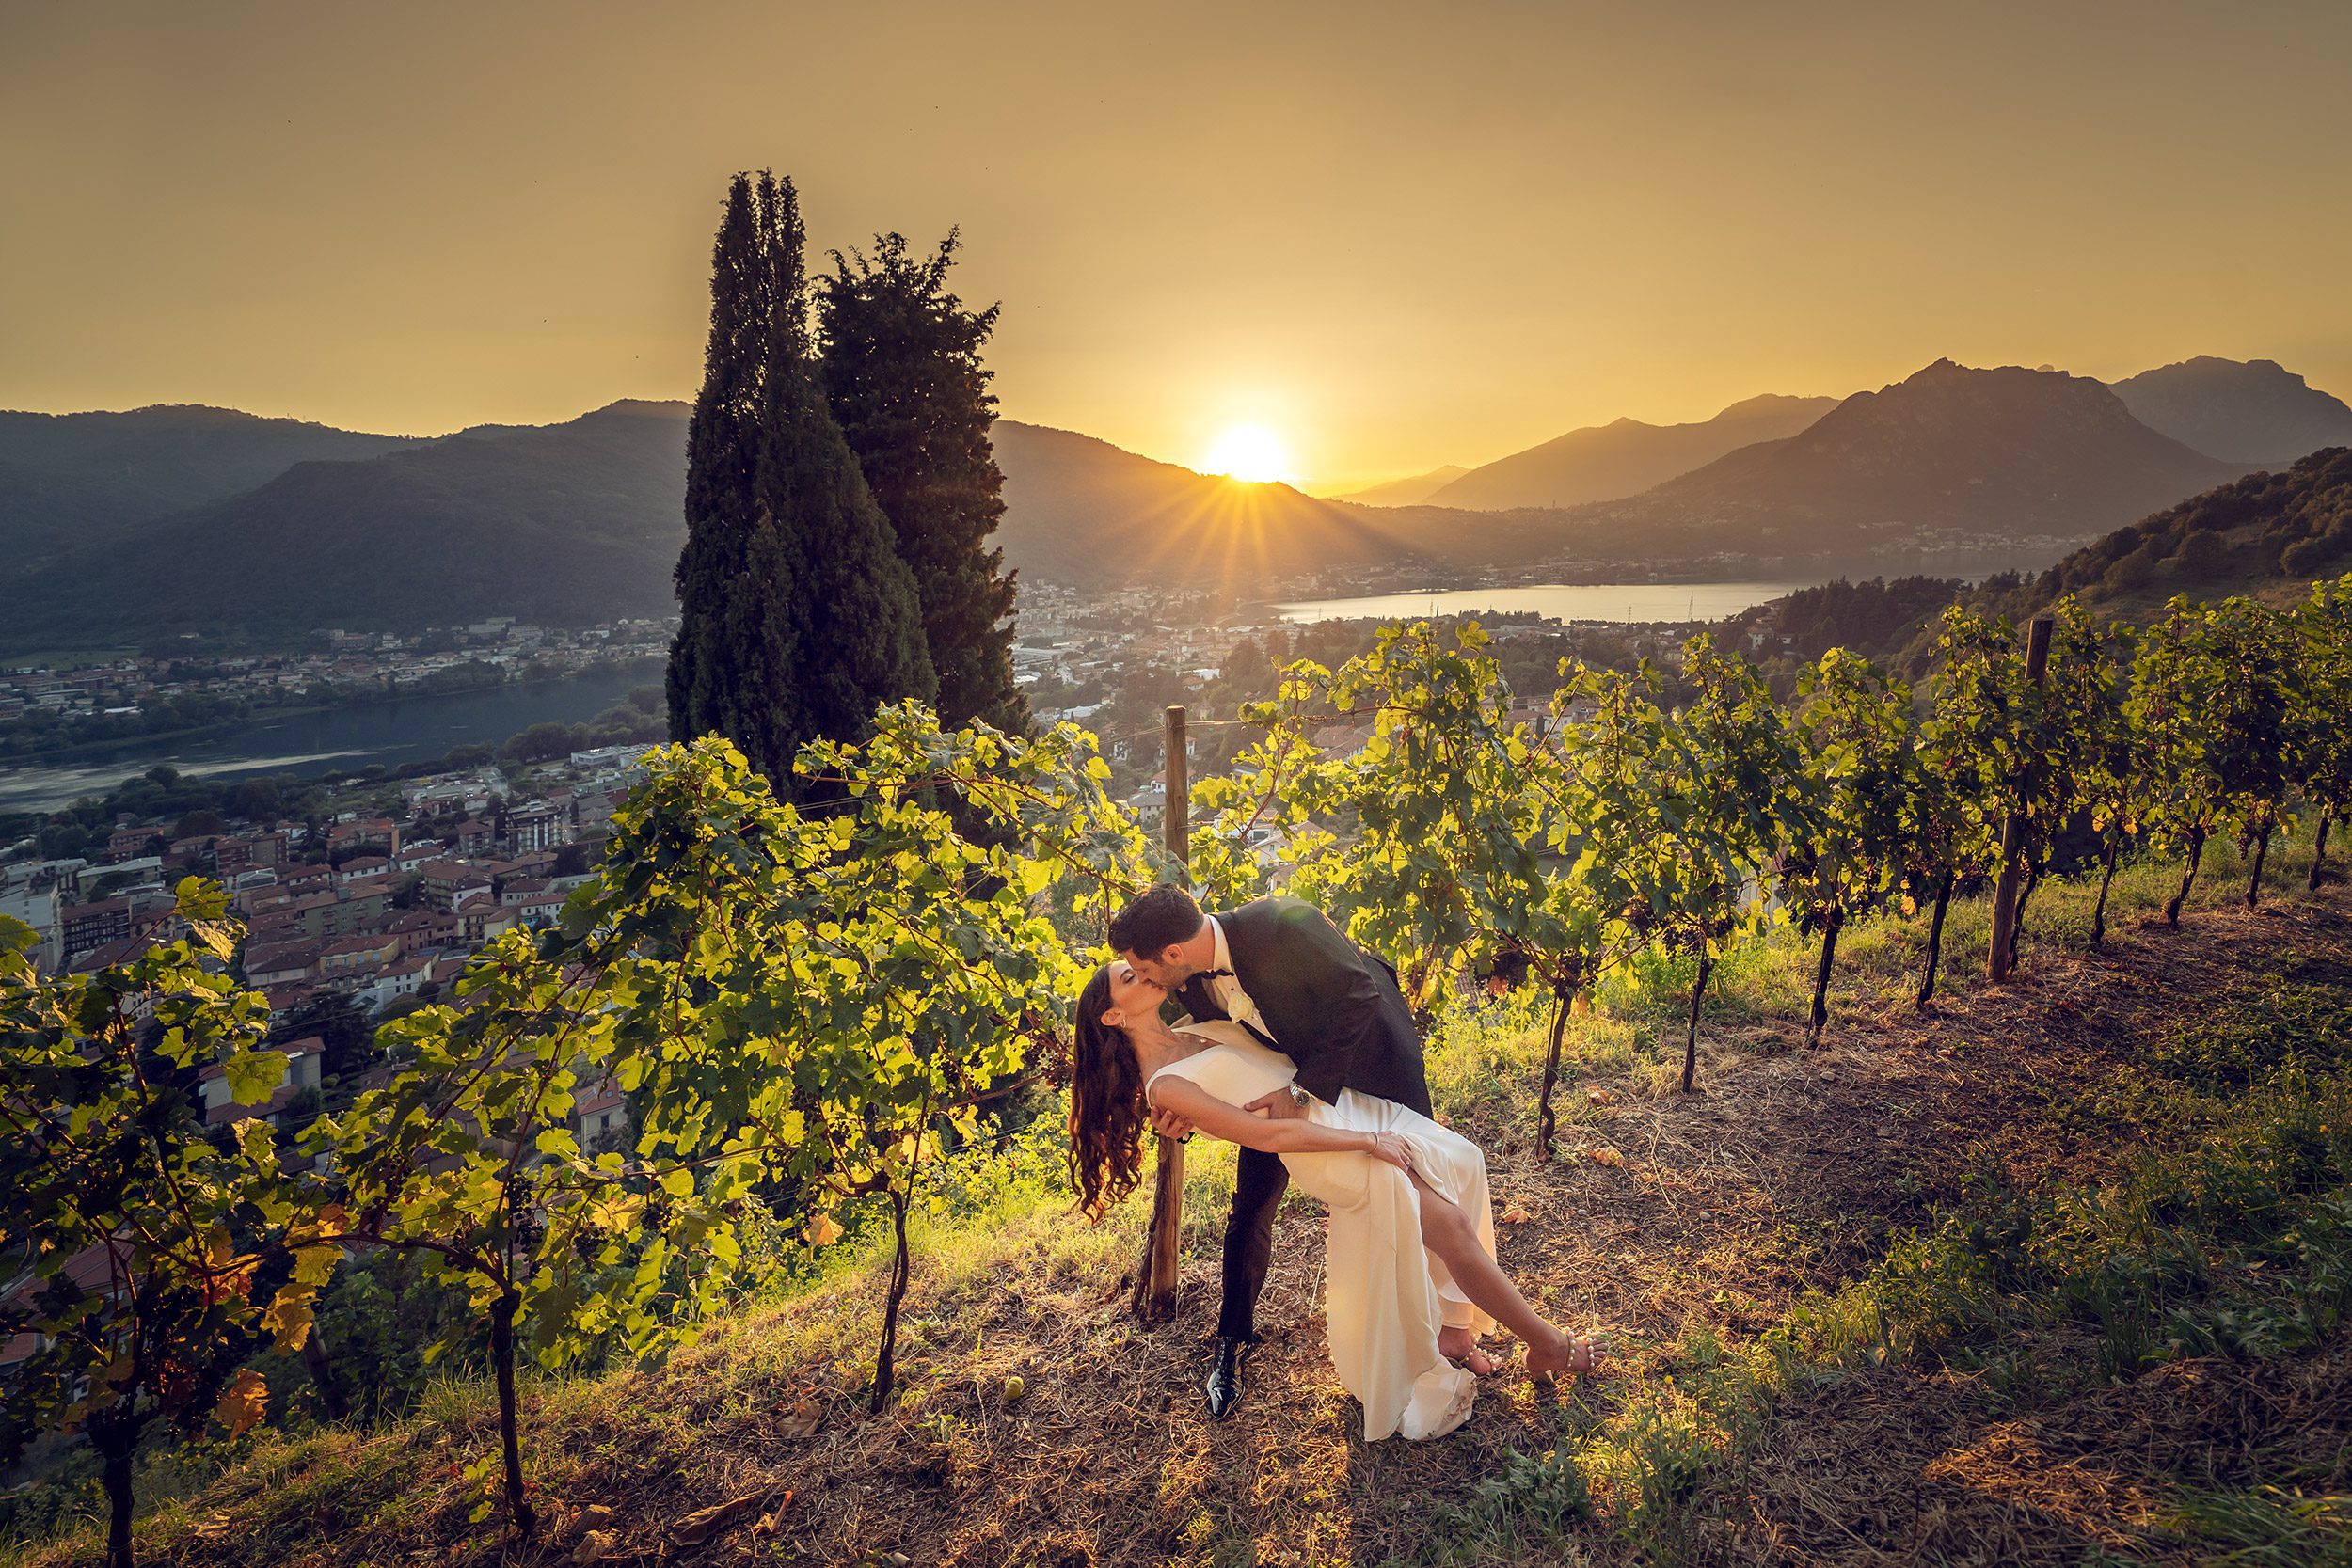 000 fotografo matrimonio reportage wedding ritratto sposi vigna casque tramonto castello rossino calolziocorte lecco lago como copia 1